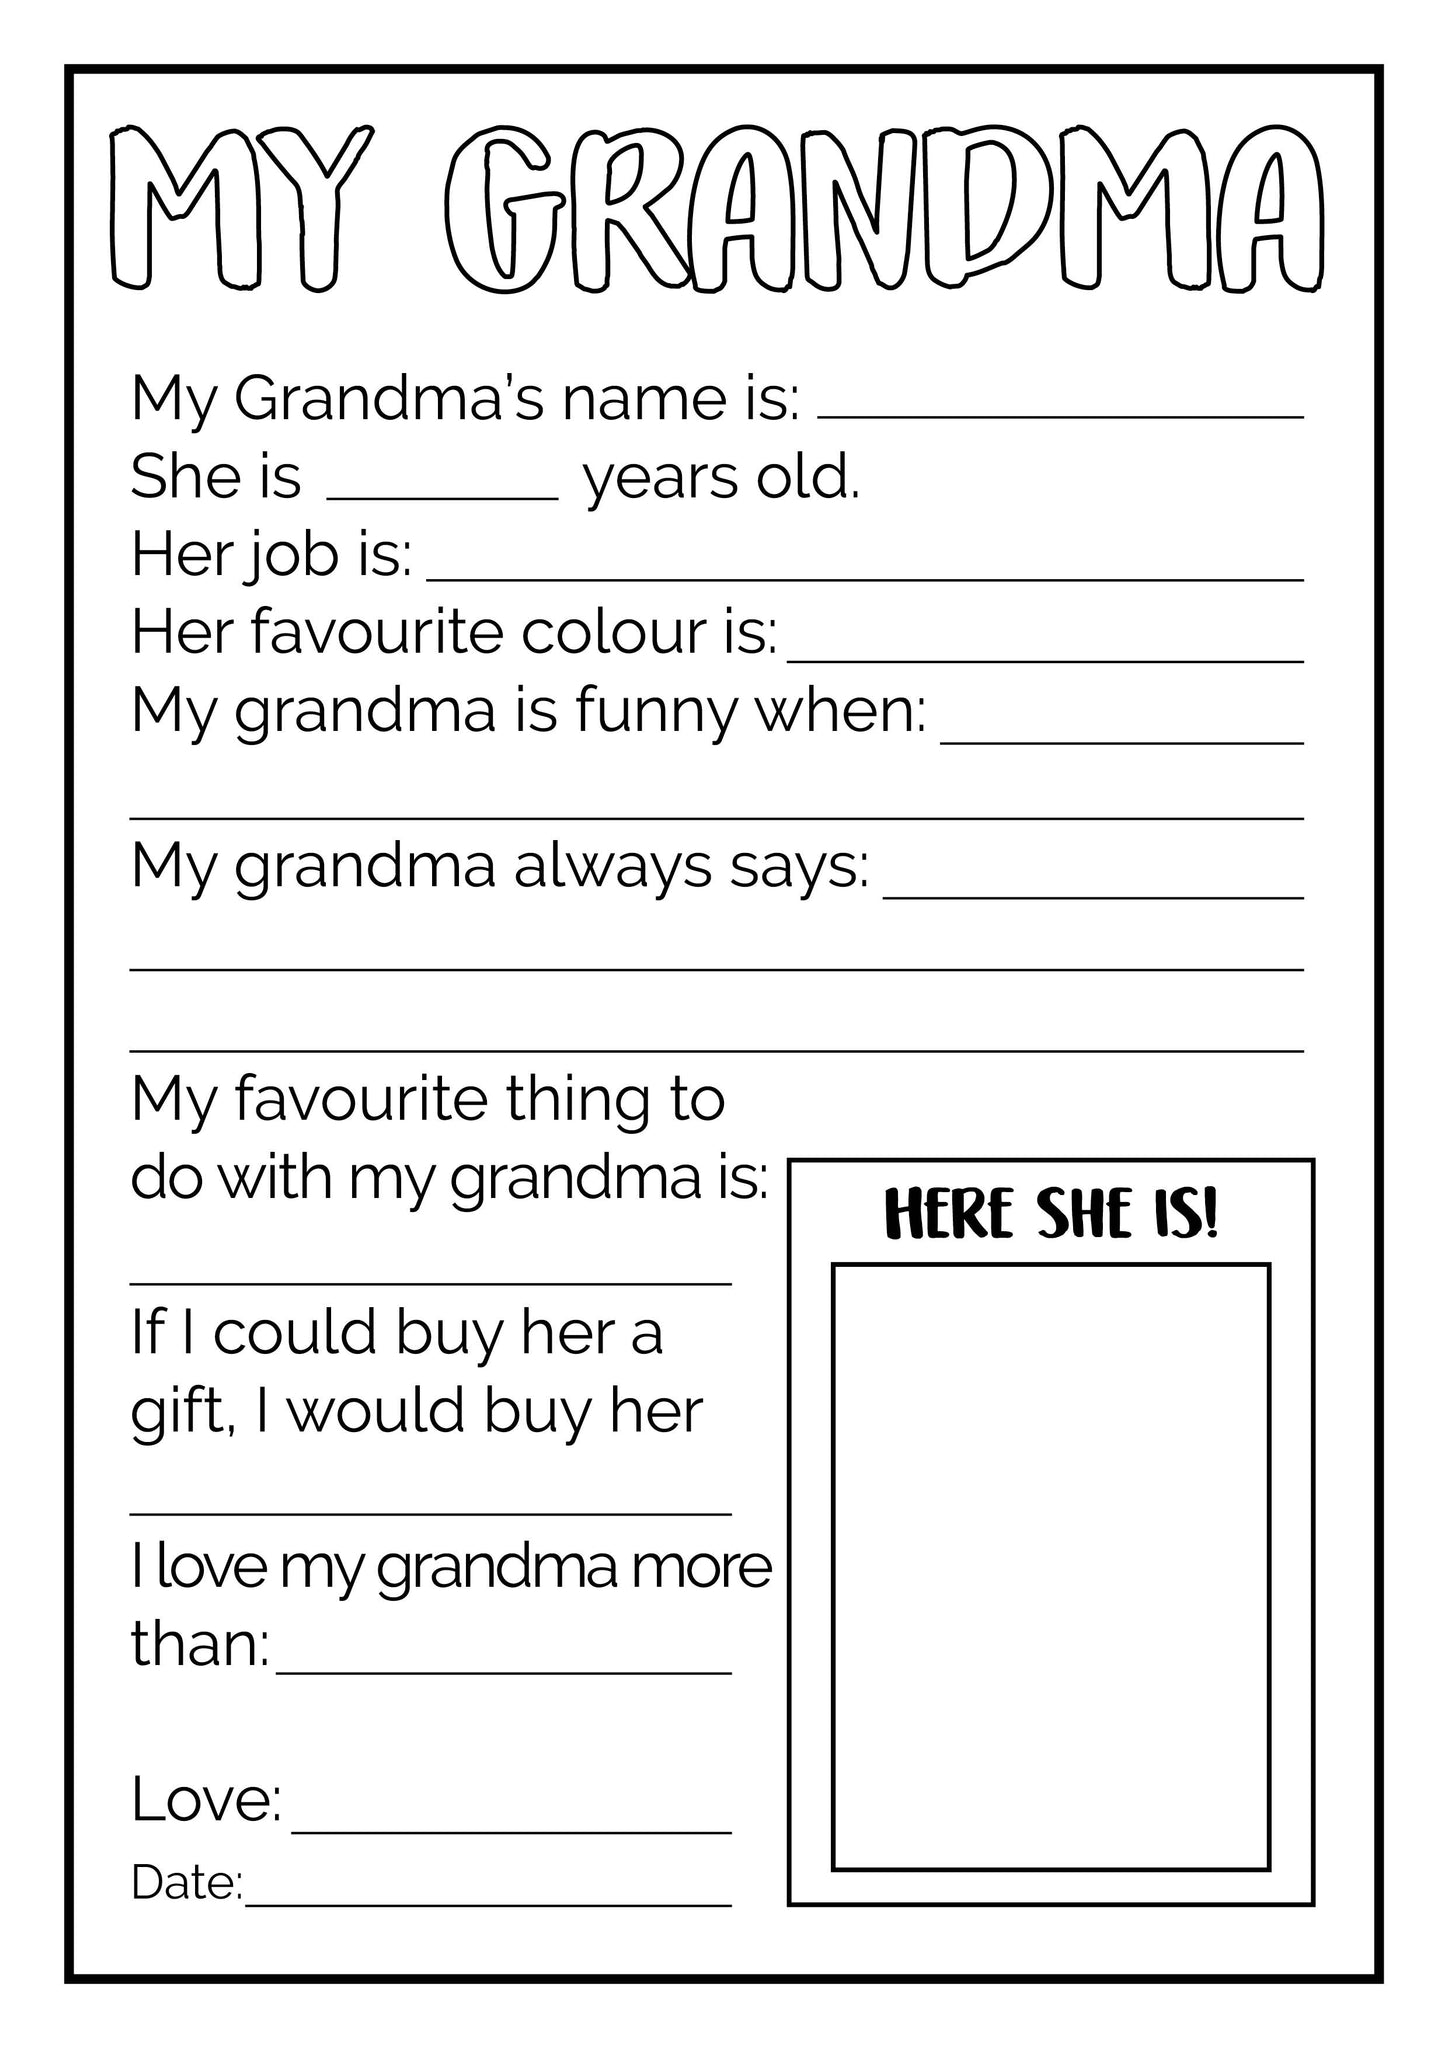 all-about-my-grandma-free-printable-printable-templates